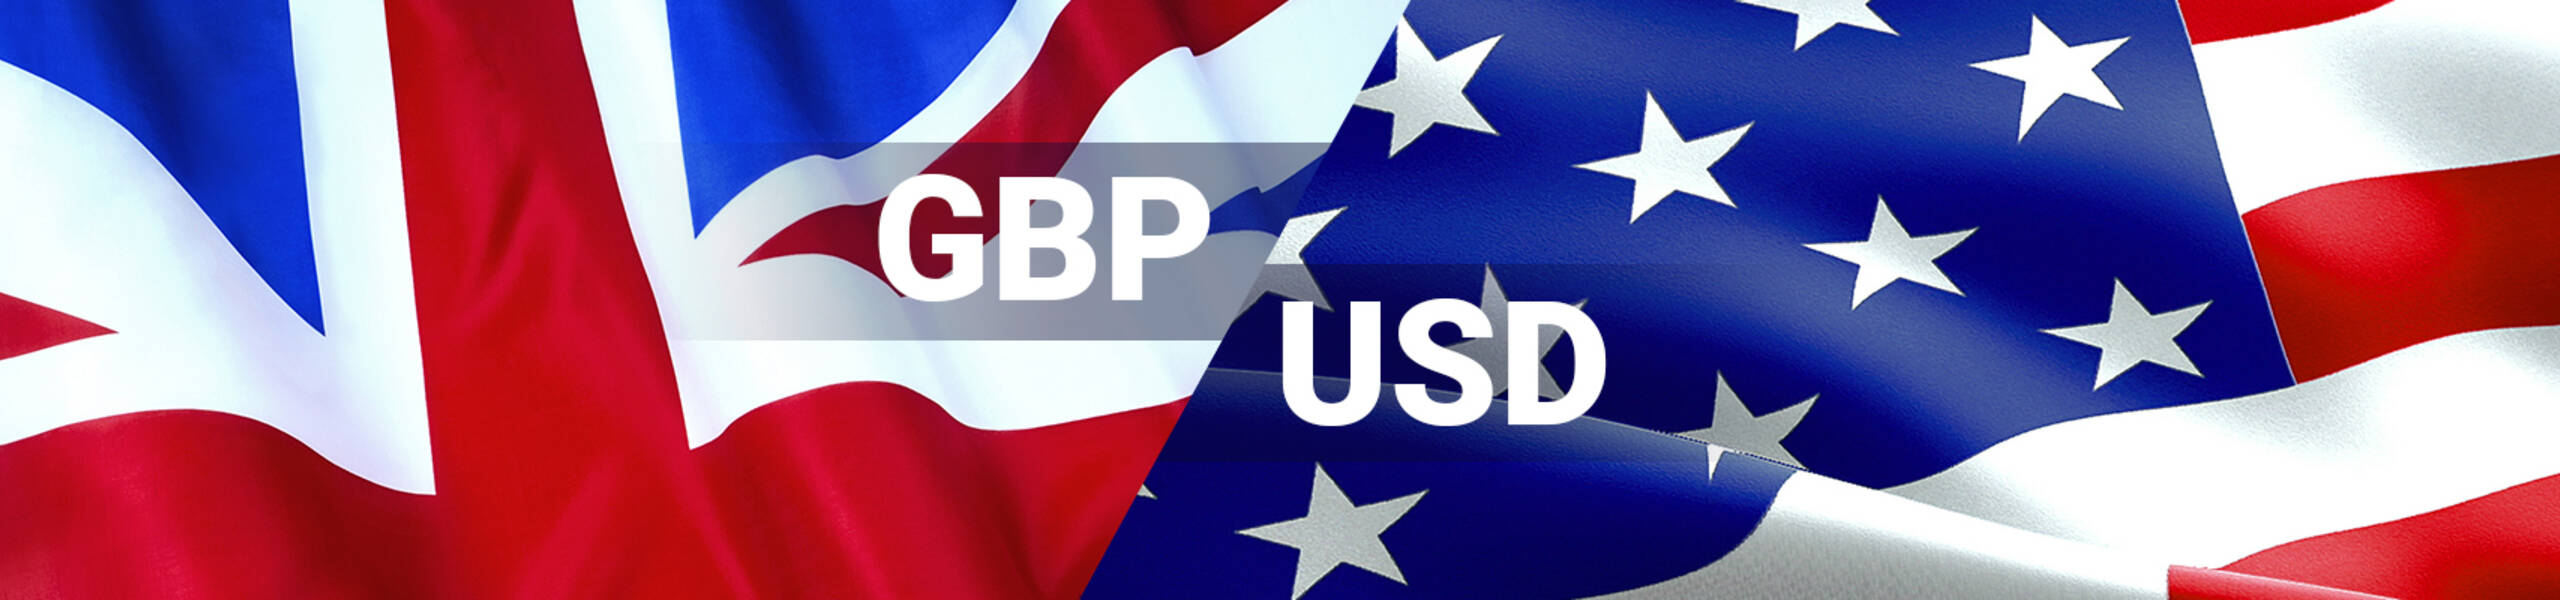 GBP/USD: pound looks weak